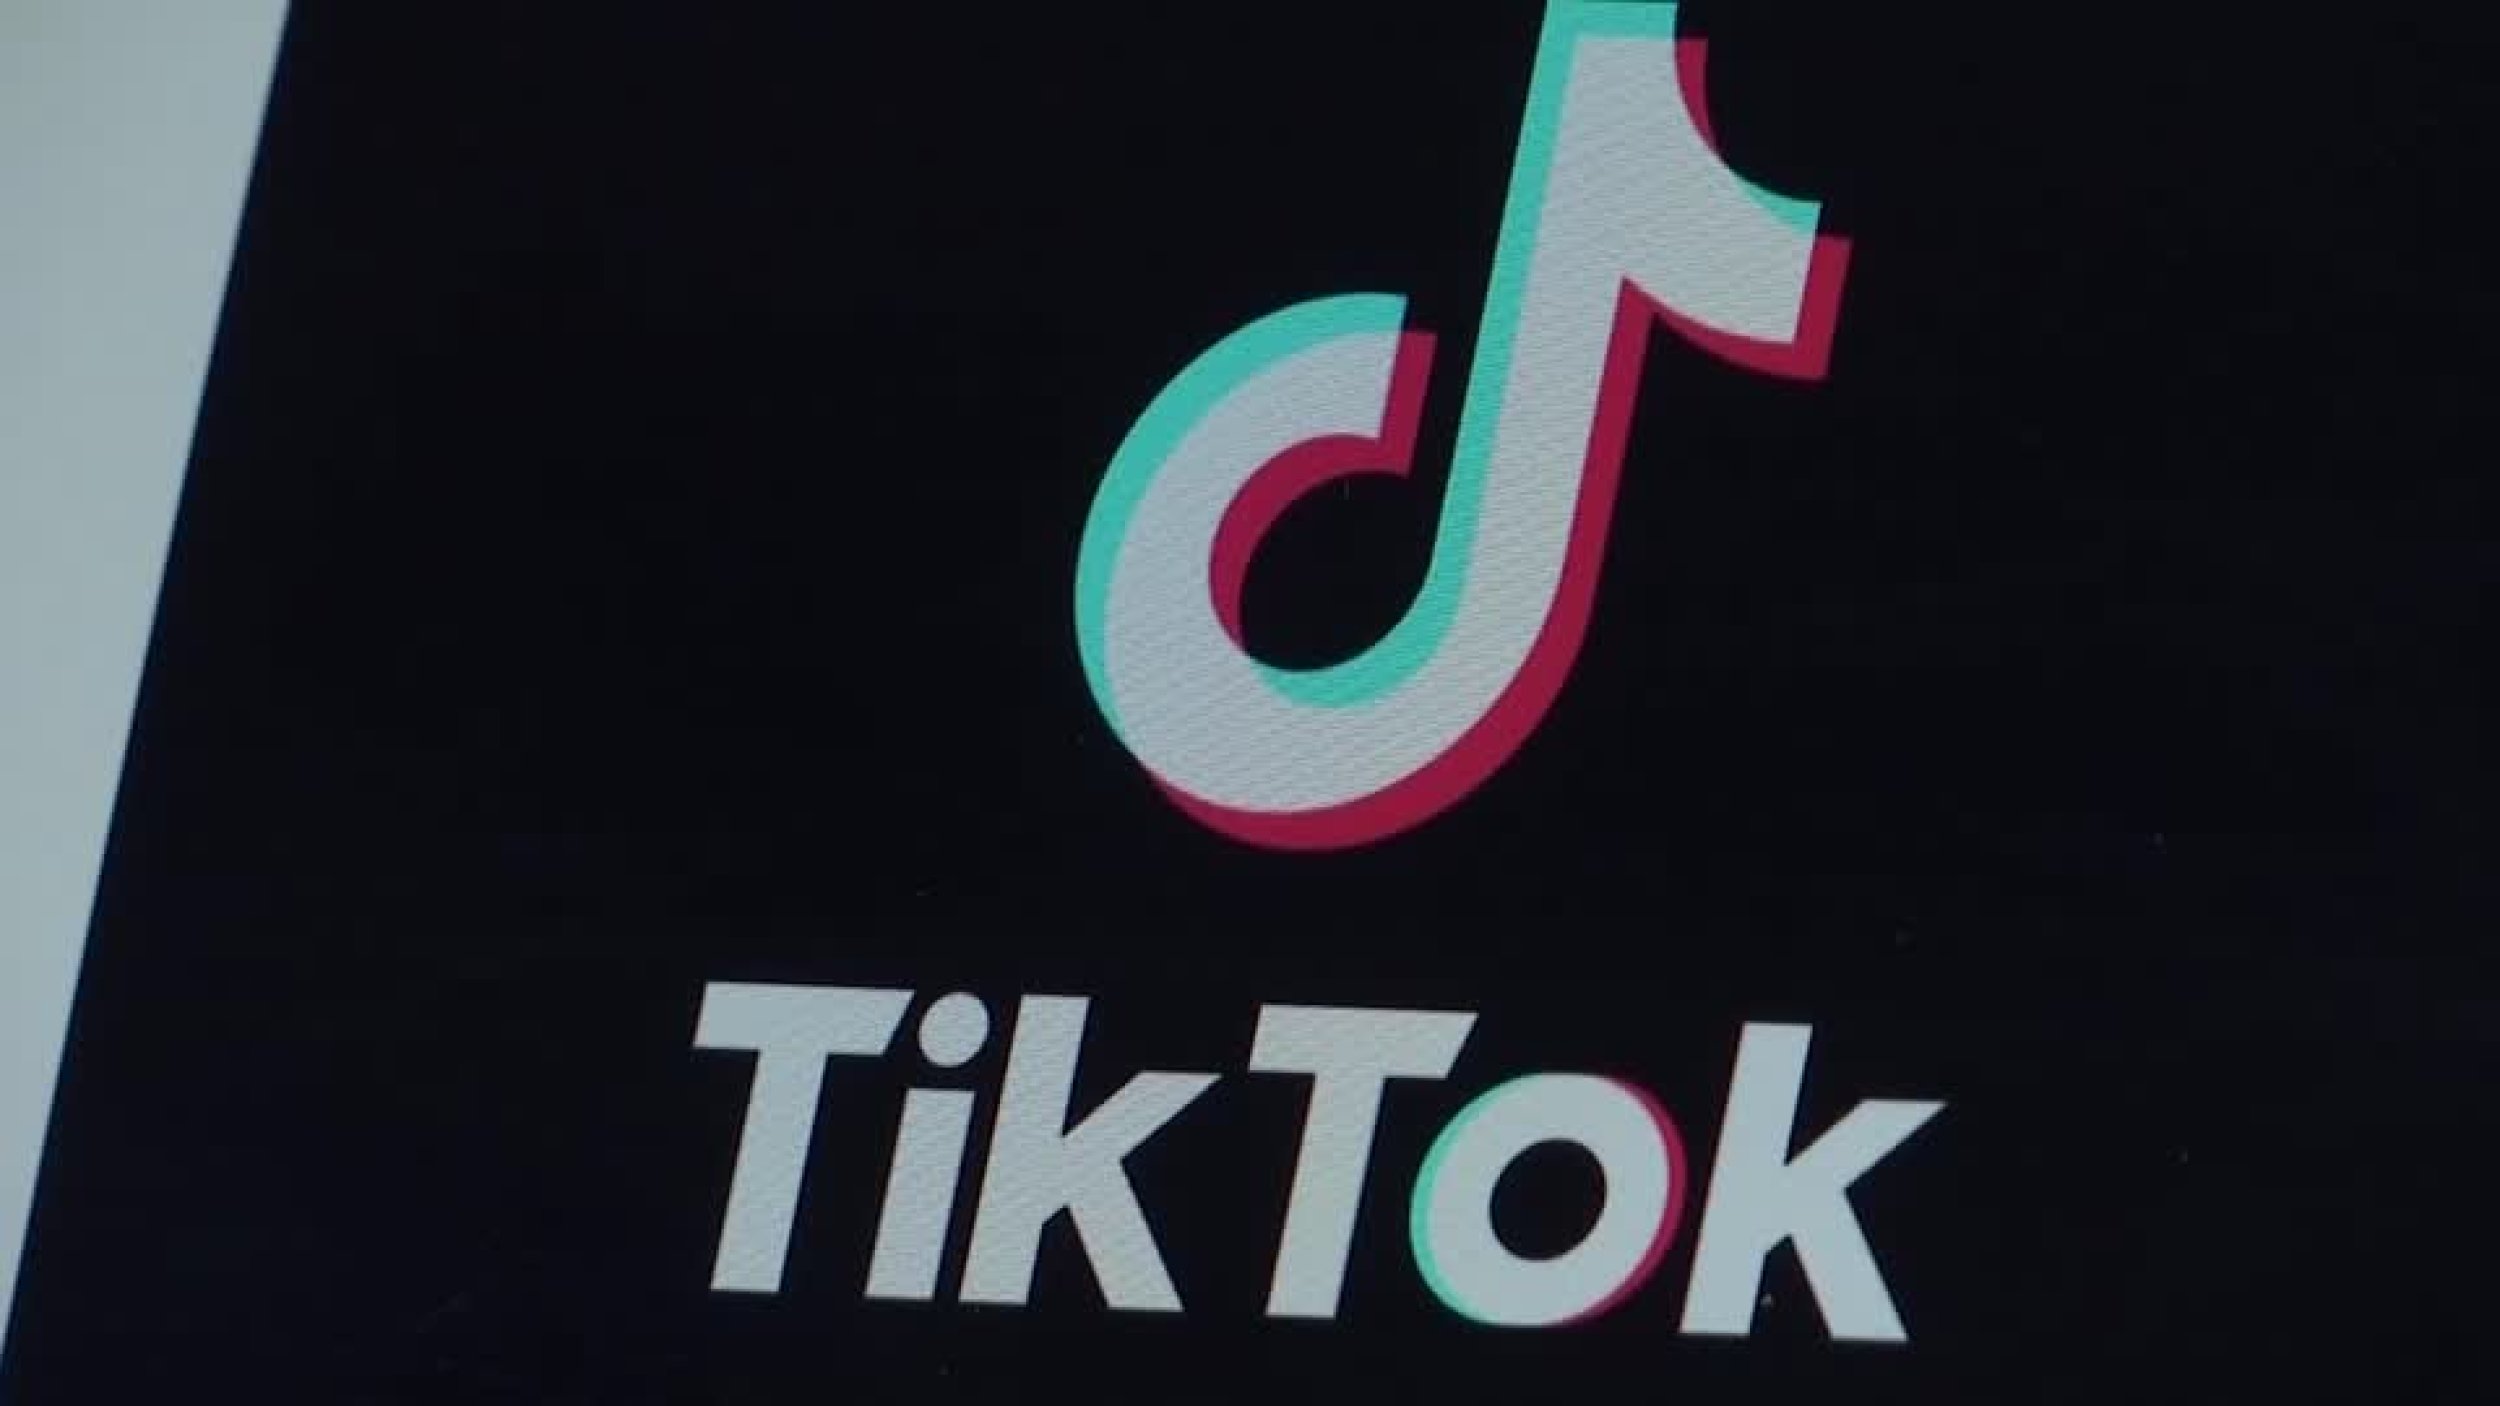 TikTok Music launches beta testing in Australia, Mexico and Singapore